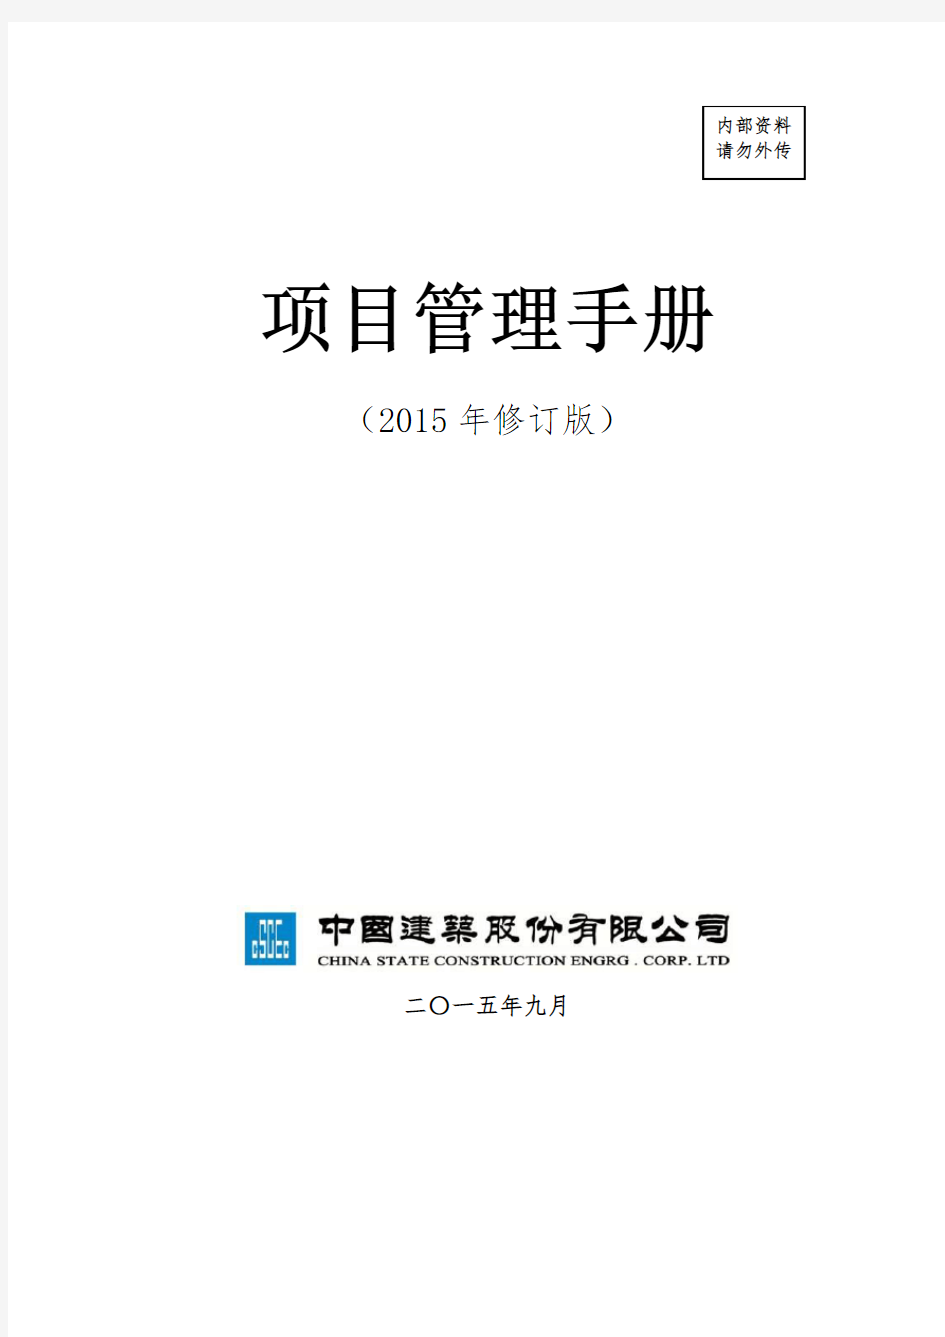 中建总公司《项目管理手册》2015年修订版最终稿(印刷版)